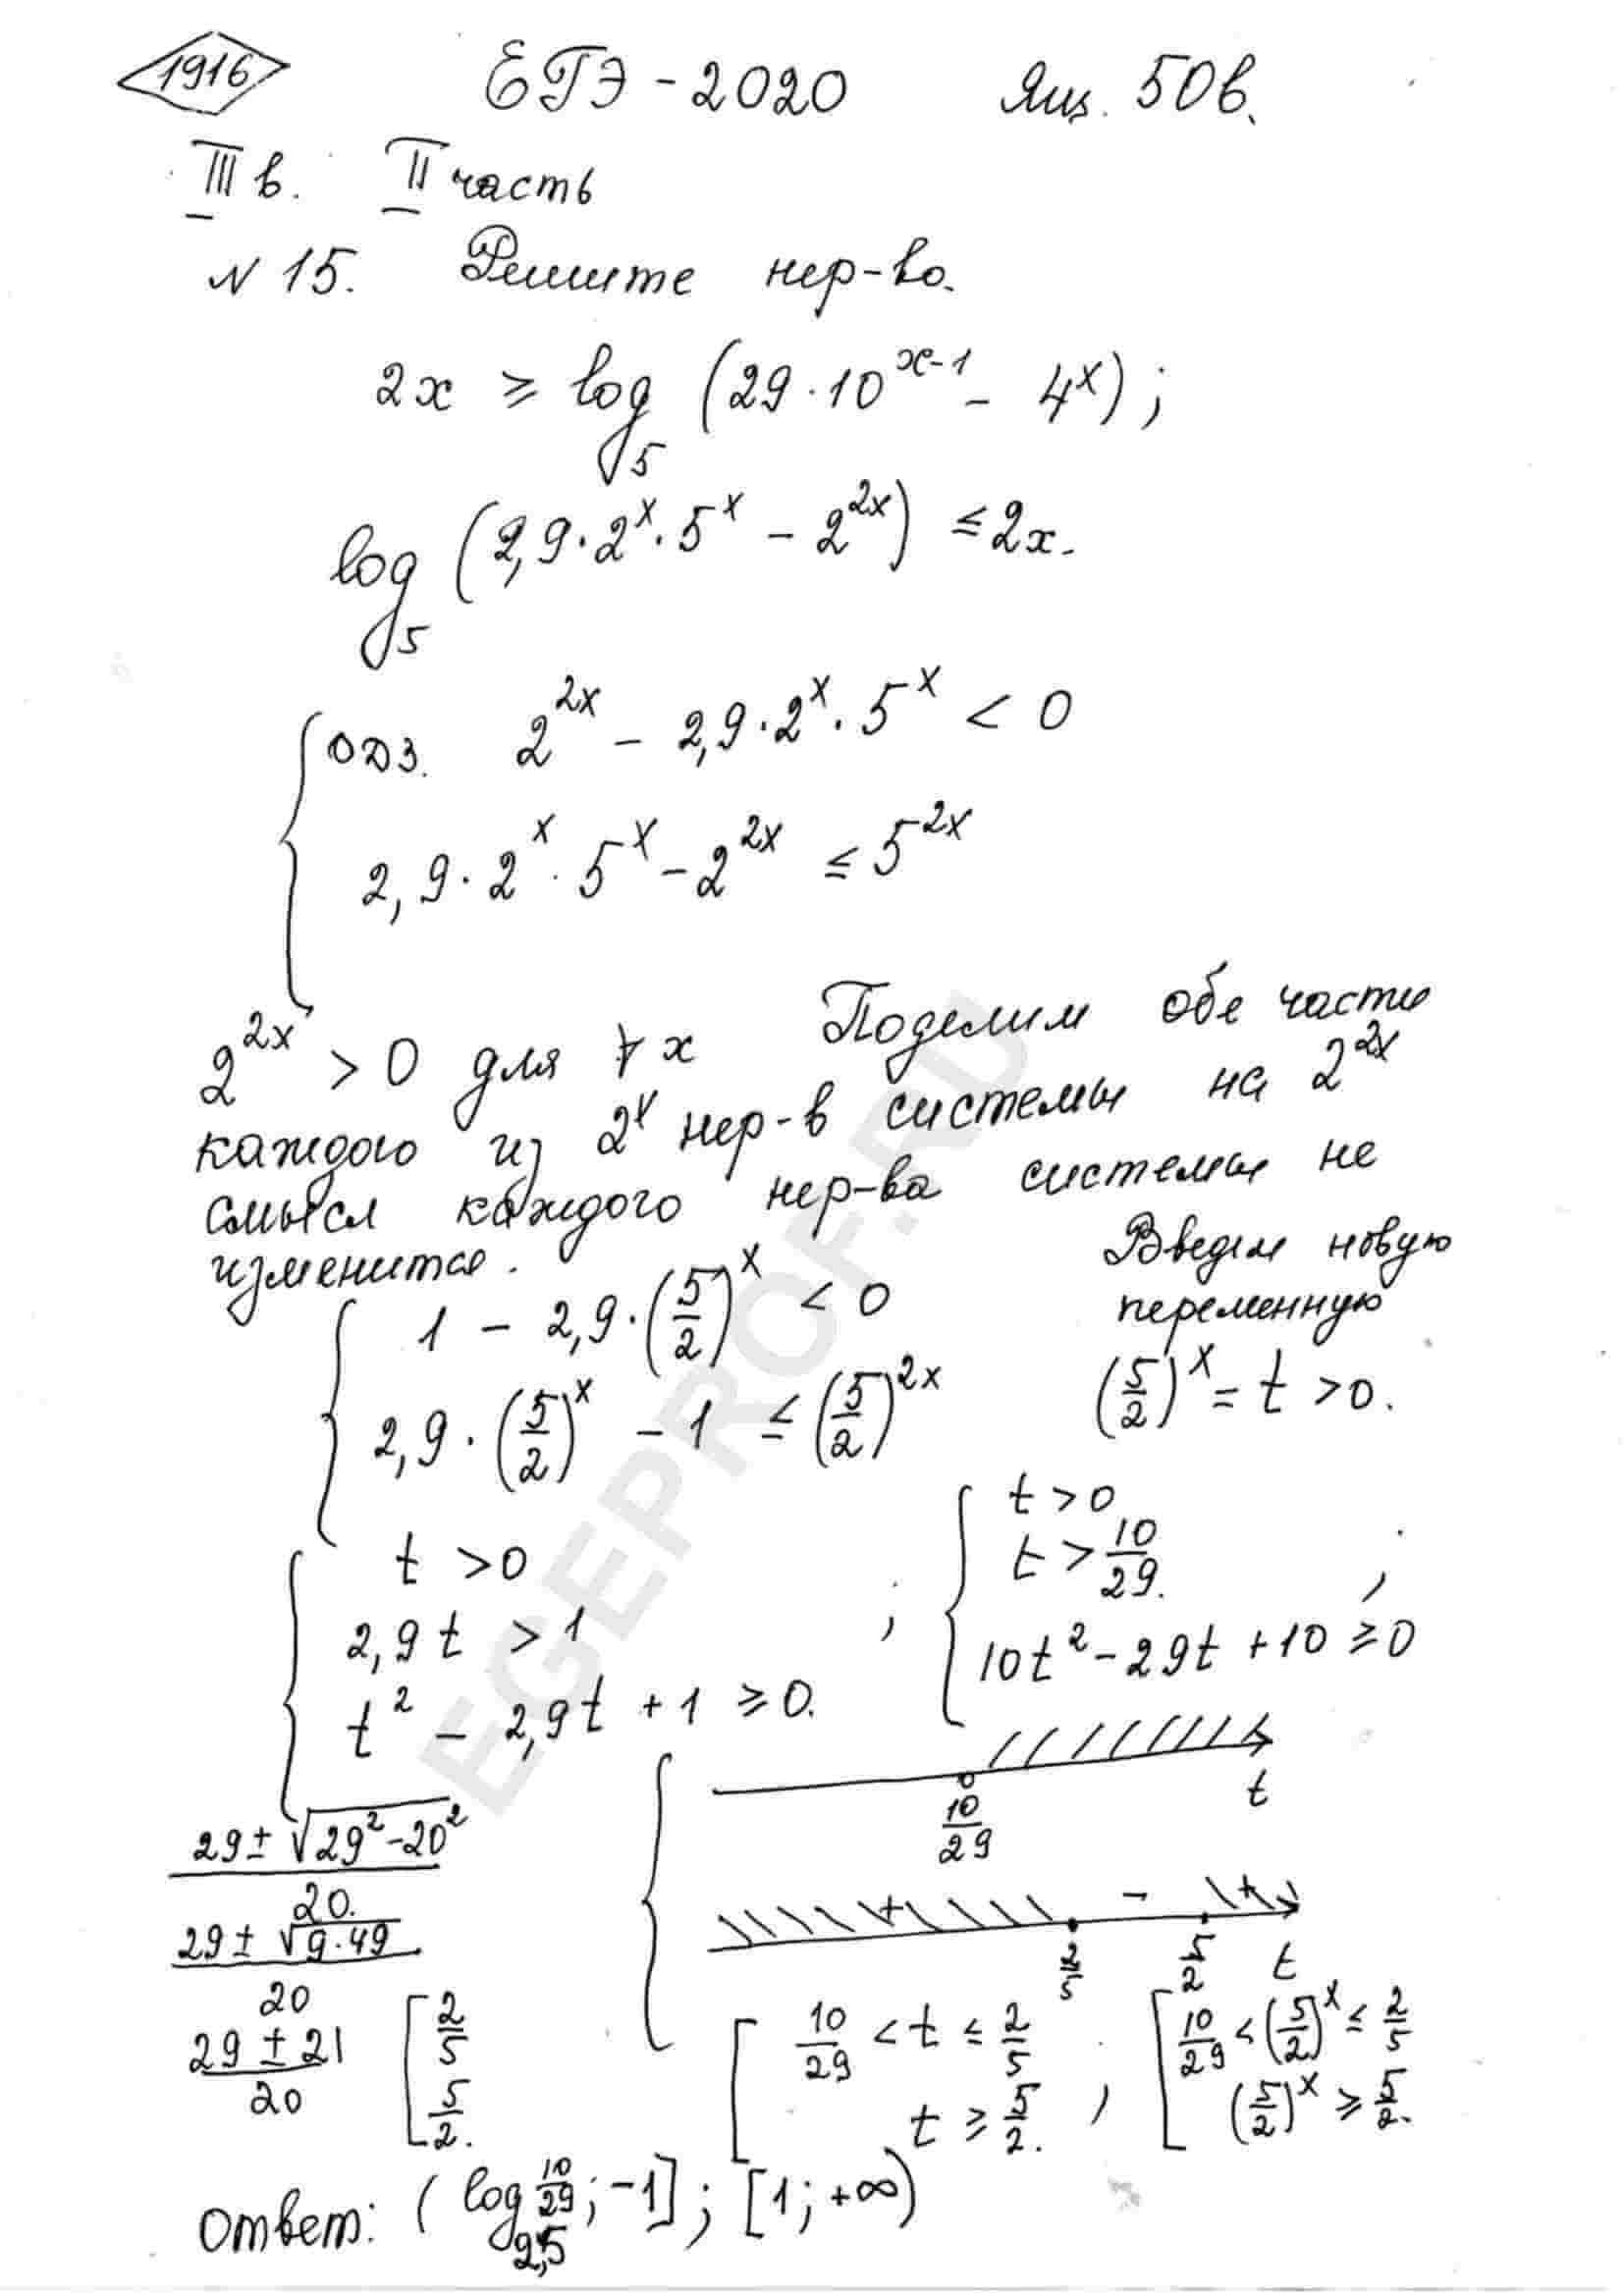 Log 2 x2 10x. 2x log 5 29 10 x1-4 x. Log^2 5 (x) + log^2 x (5) + 2. ЕГЭ профильная математика Ященко решение неравенств. 14 Задание профиль математика.